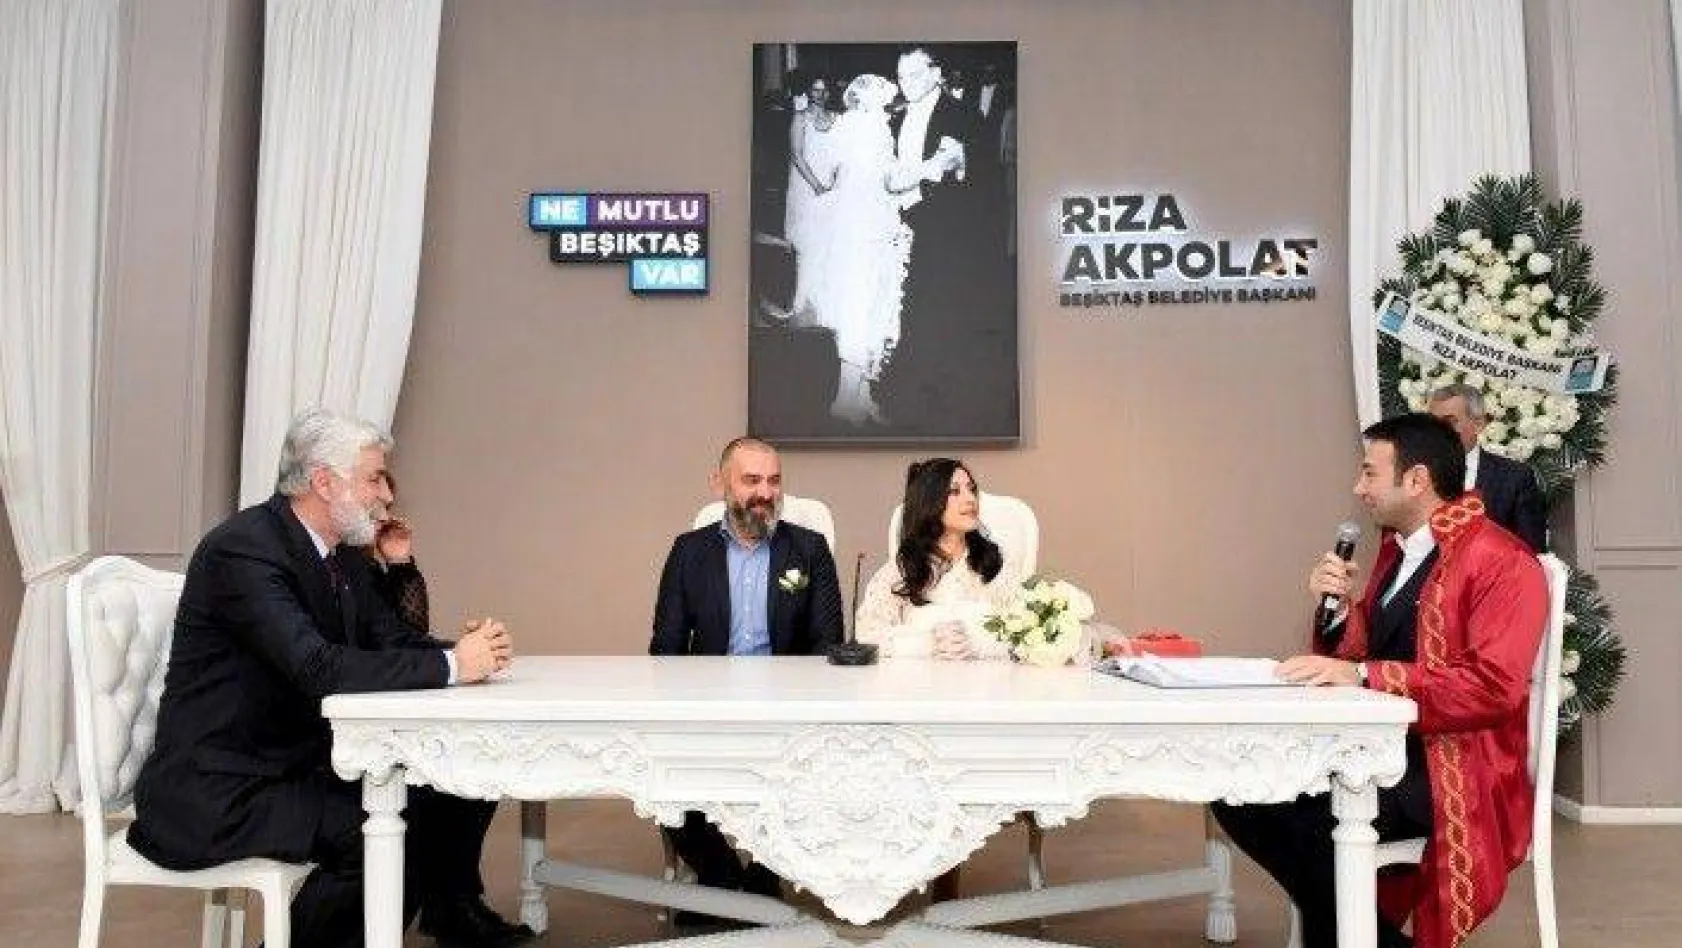 Beşiktaş'ta nikah törenlerine kurallar getirildi